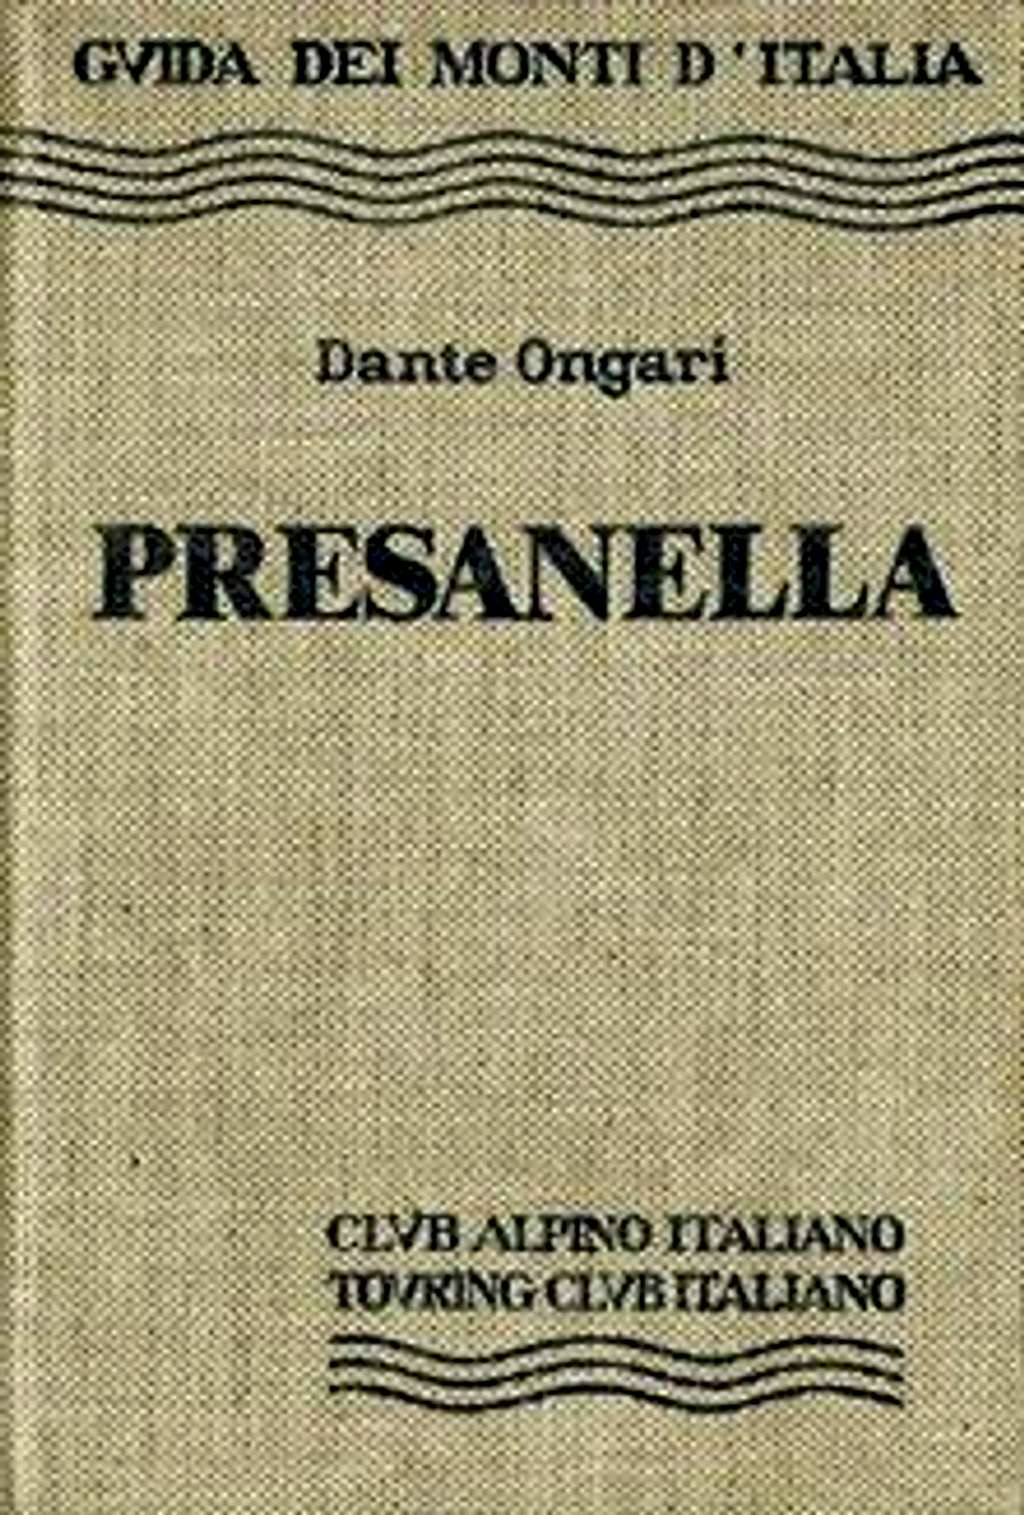 Presanella guidebook